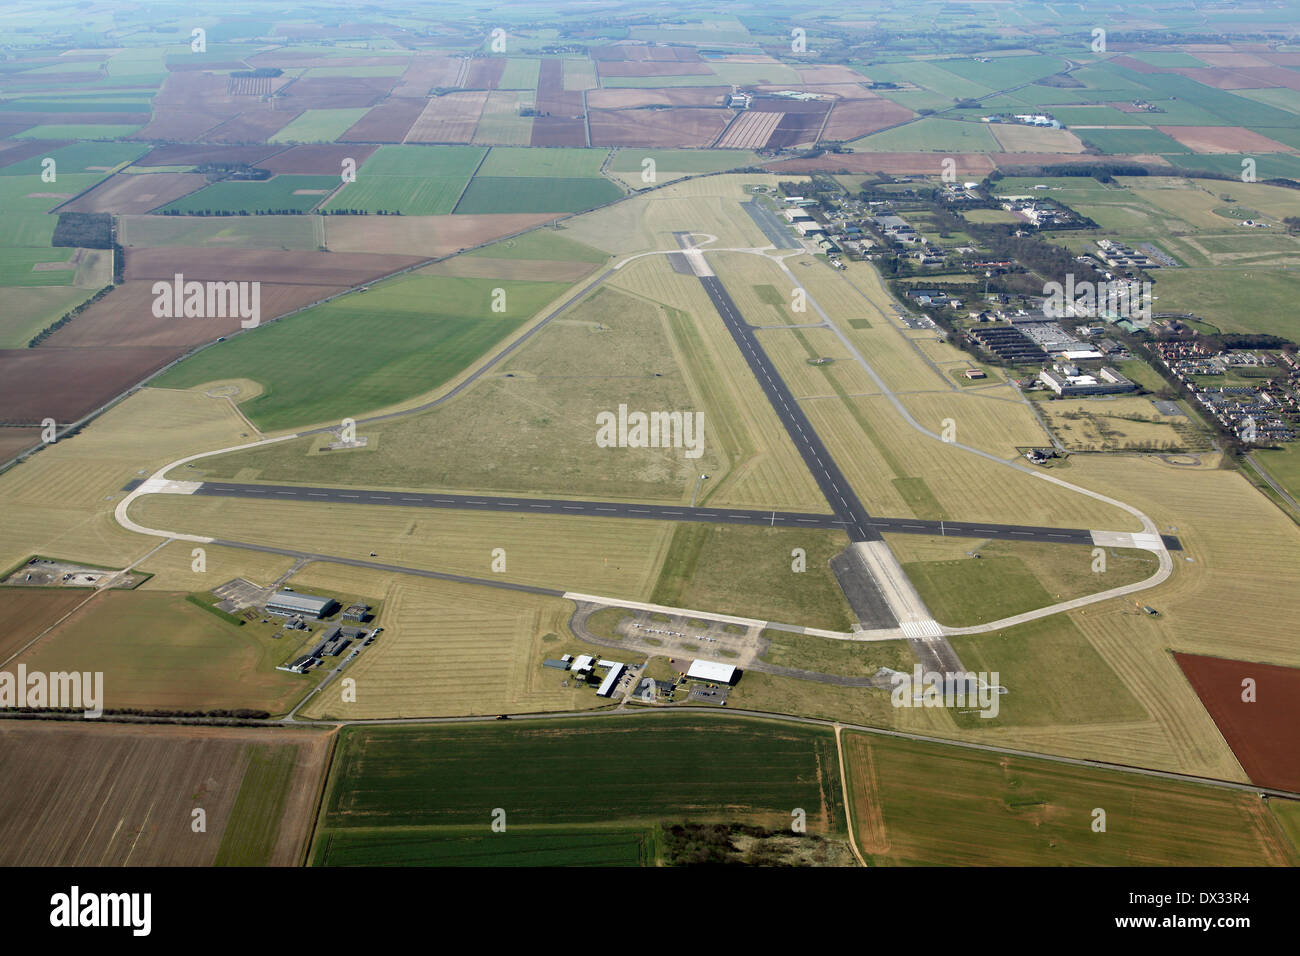 Vue aérienne de la RAF Cranwell près de Sleaford, un aéroport avec deux pistes Banque D'Images